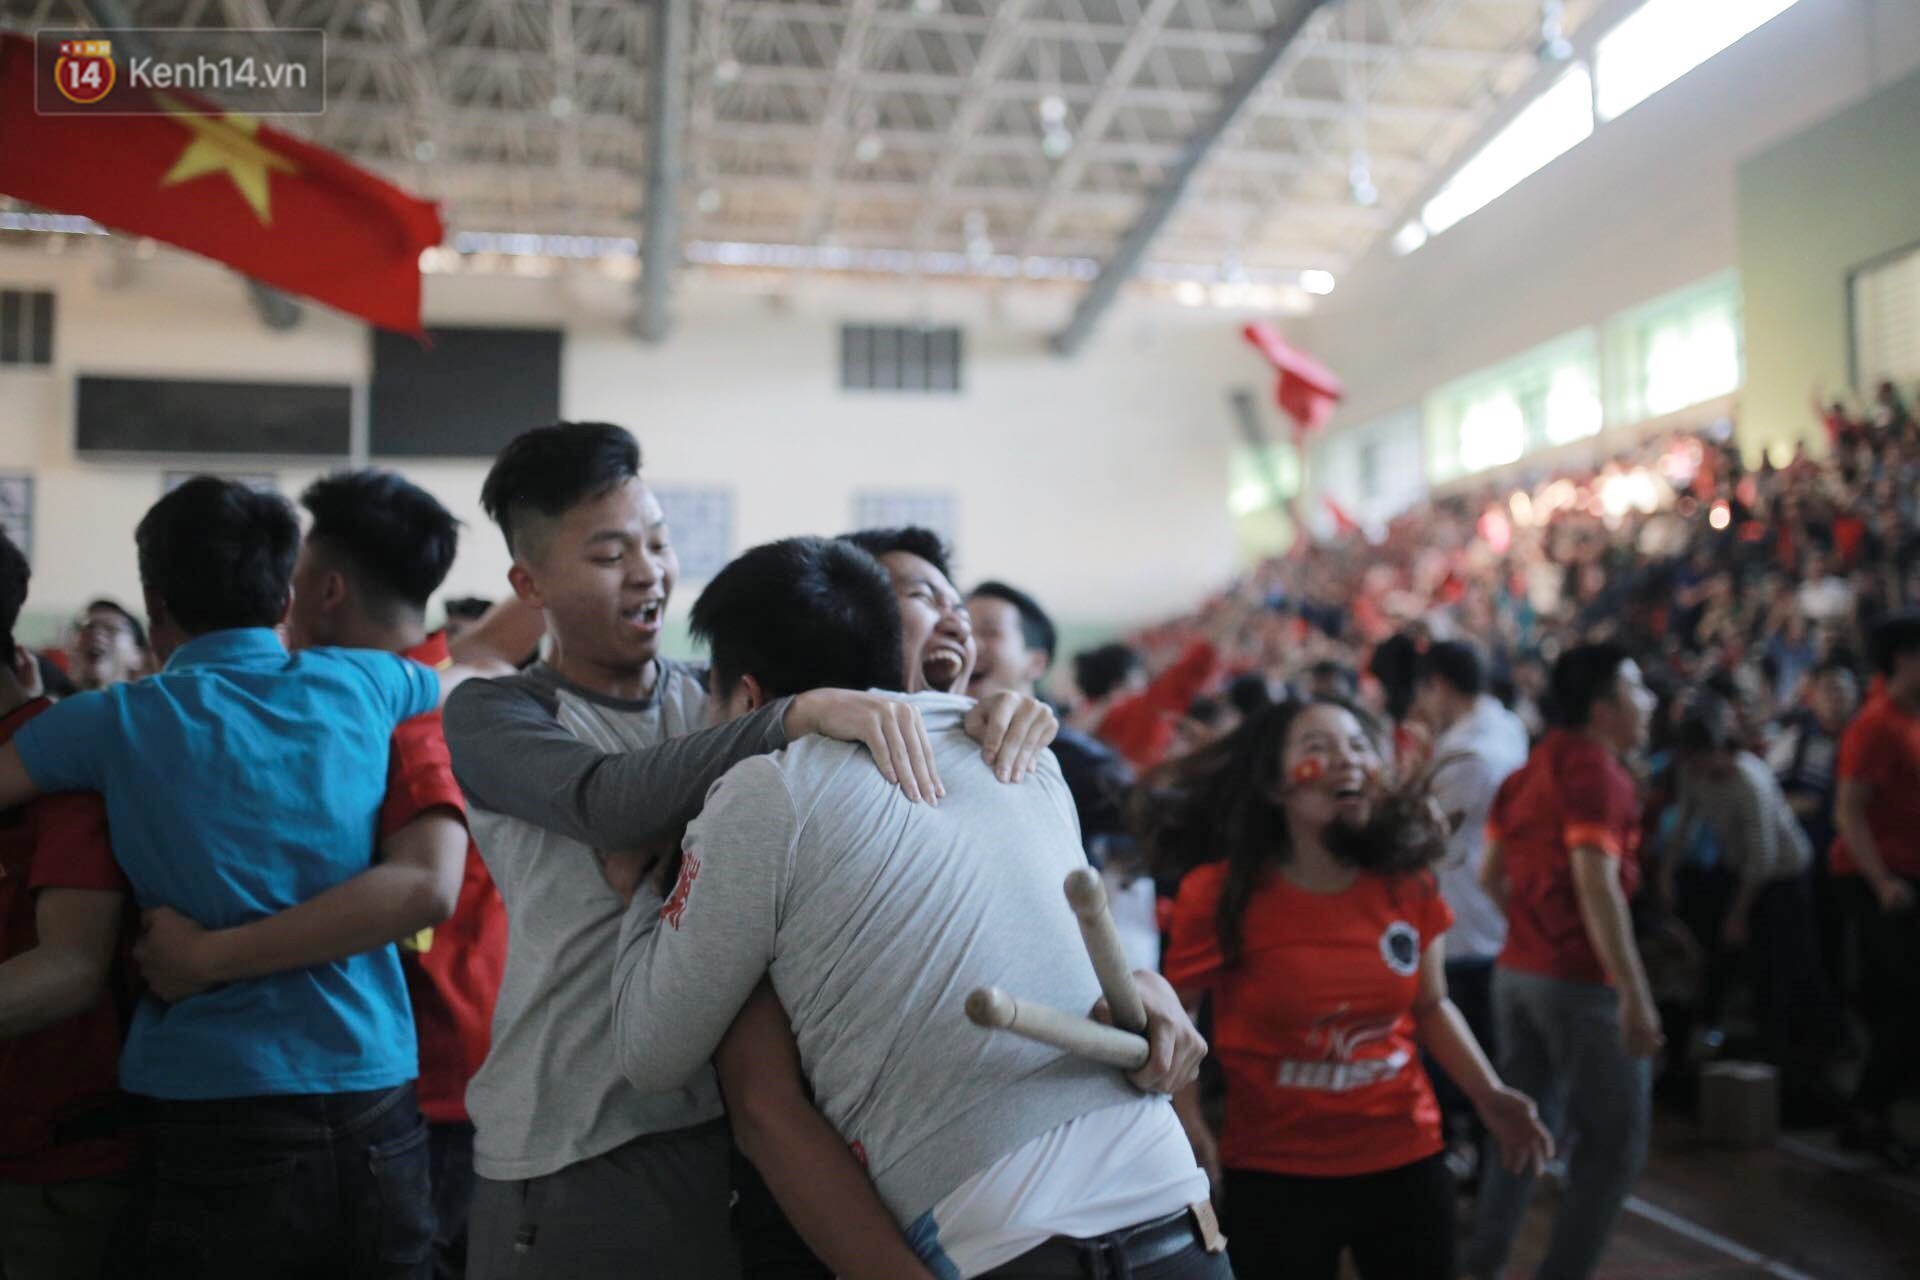 Chùm ảnh: Khoảnh khắc U23 Việt Nam gỡ hòa trong những phút cuối, hàng triệu người đã nắm tay, ôm nhau hạnh phúc nhường này - Ảnh 7.